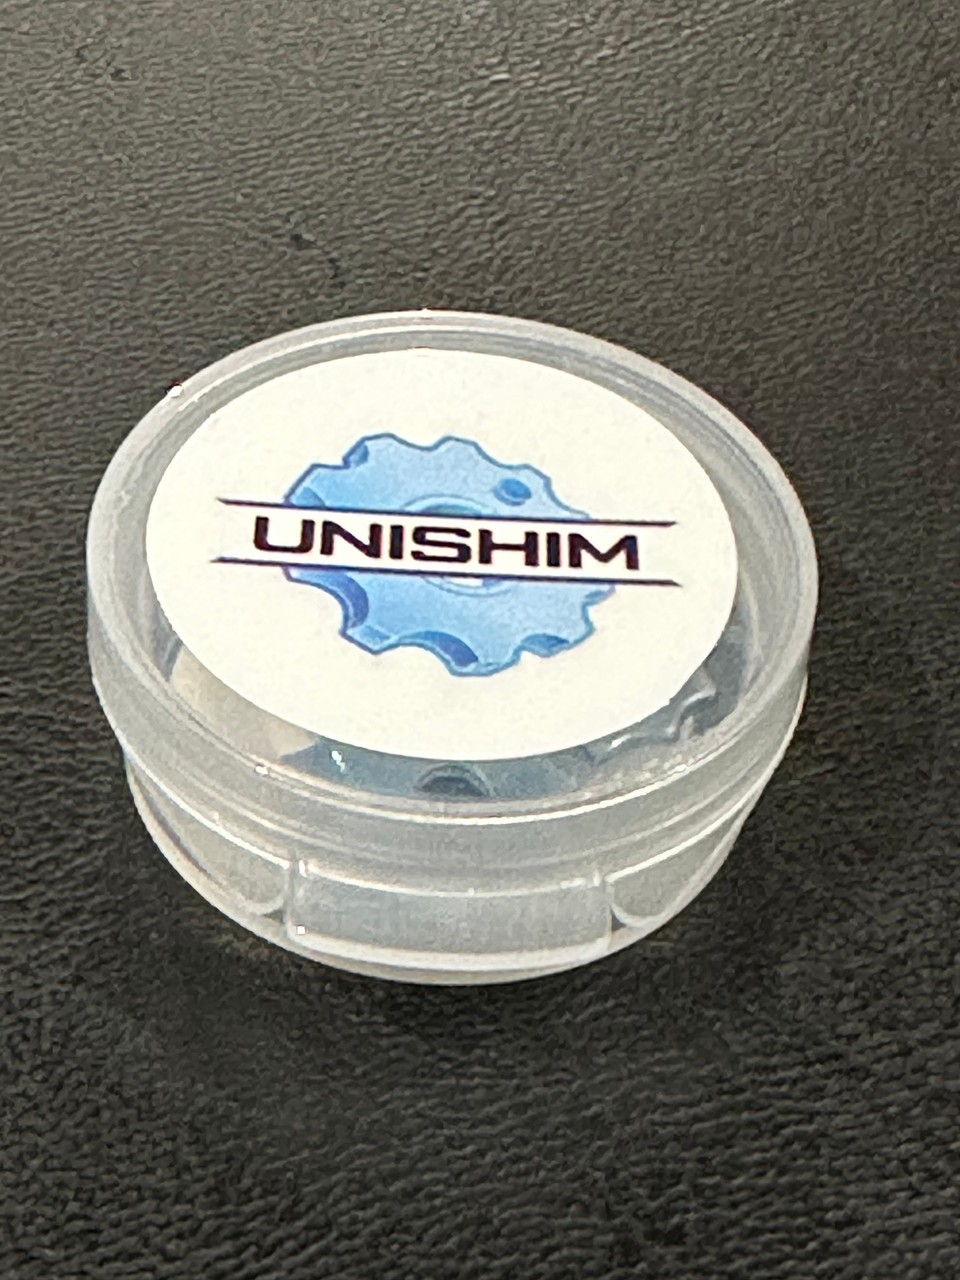 UniShim Electrical Shimming Fastener  Free Sample - 2pk